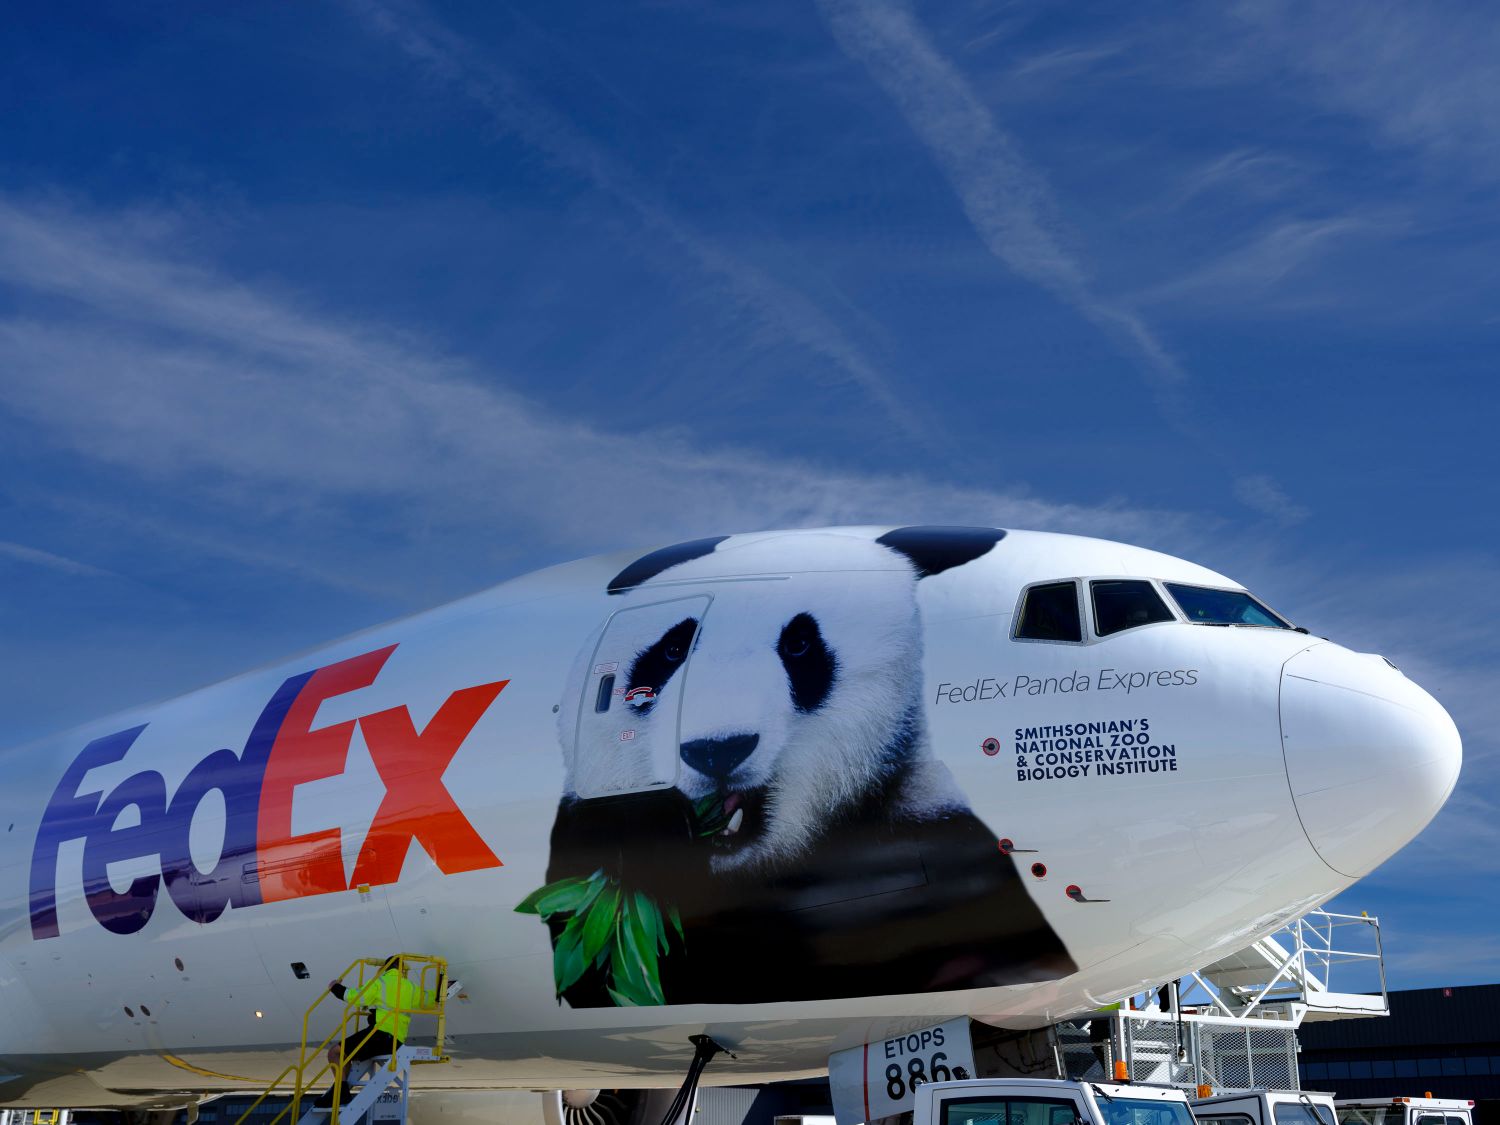 Gia đình gấu trúc Mỹ Hương Thiêm Thiêm và Tiểu Kỳ Tích 2 Gia đình gấu trúc Mỹ Hương, Thiêm Thiêm và Tiểu Kỳ Tích trở về Trung Quốc trên chuyến bay riêng FedEx Panda Express